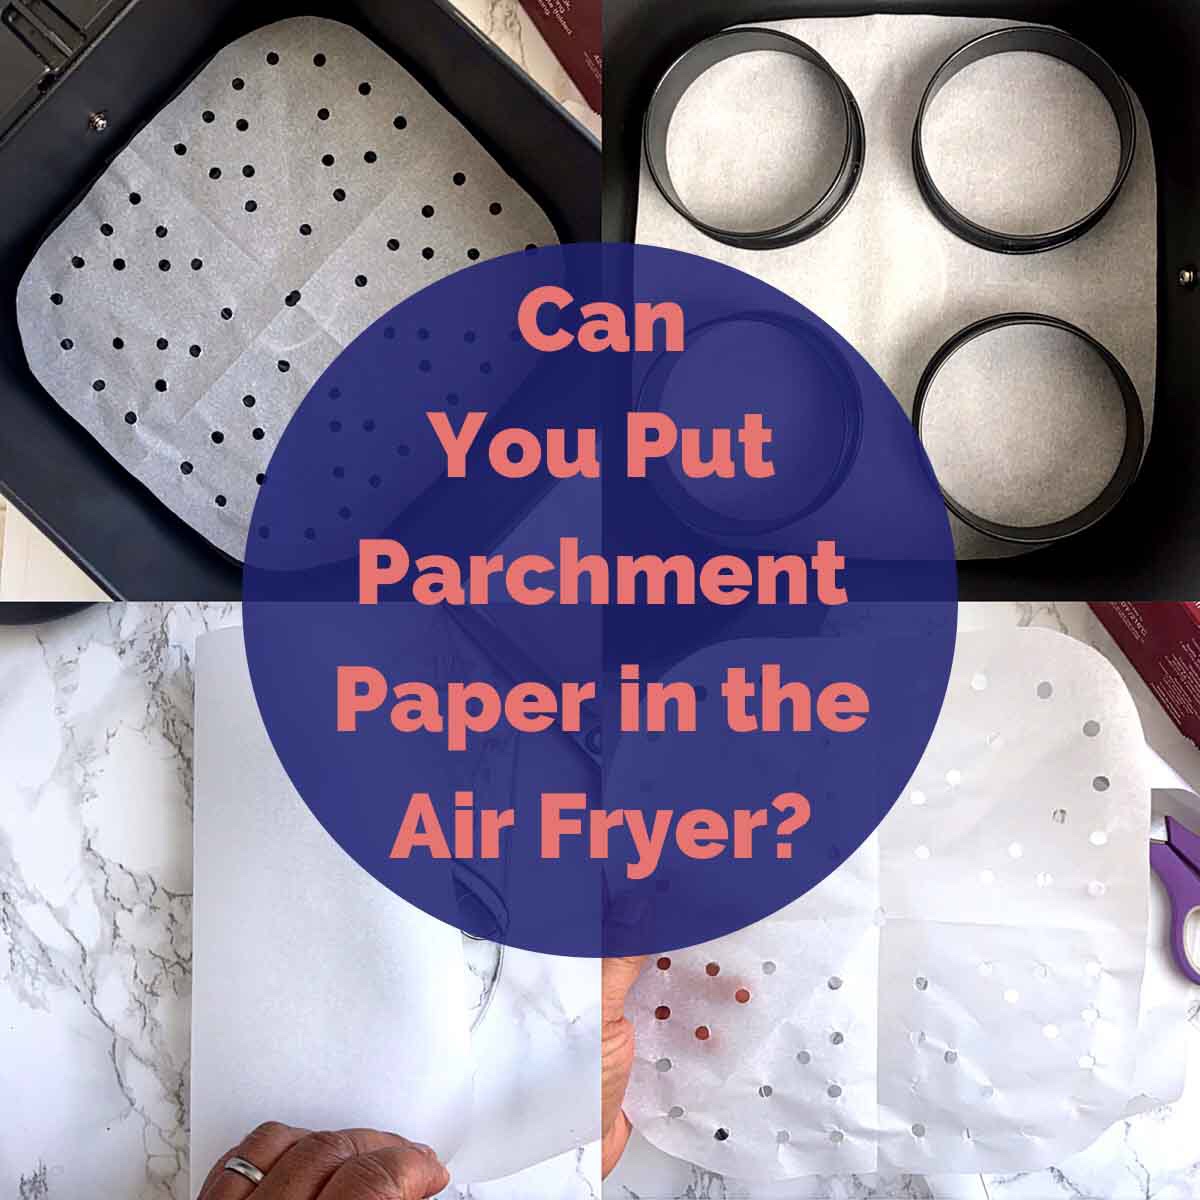 Best Parchment Paper Uses